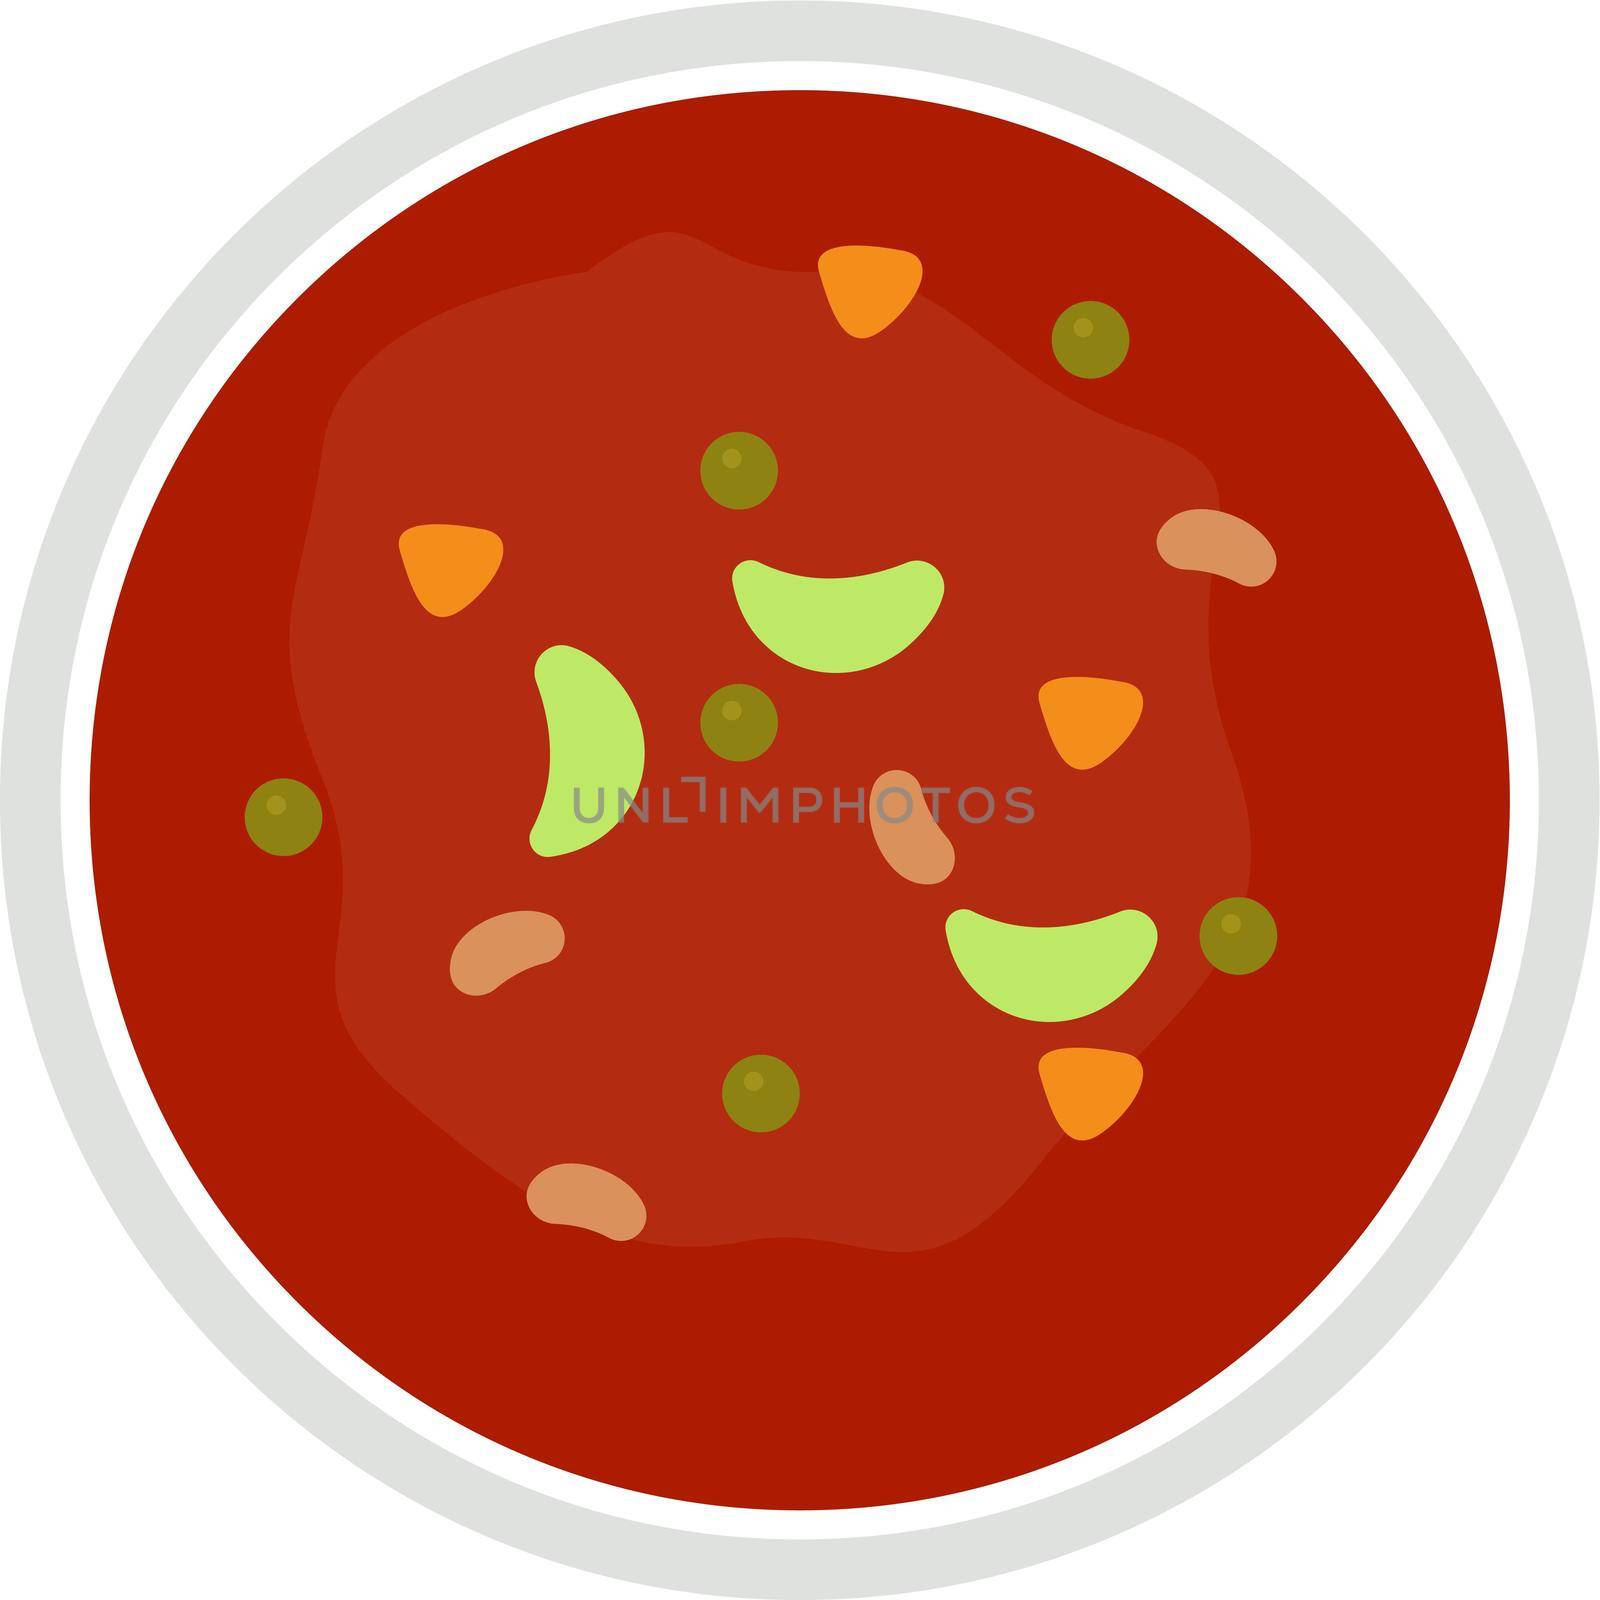 Vegan soup, illustration, vector on white background.